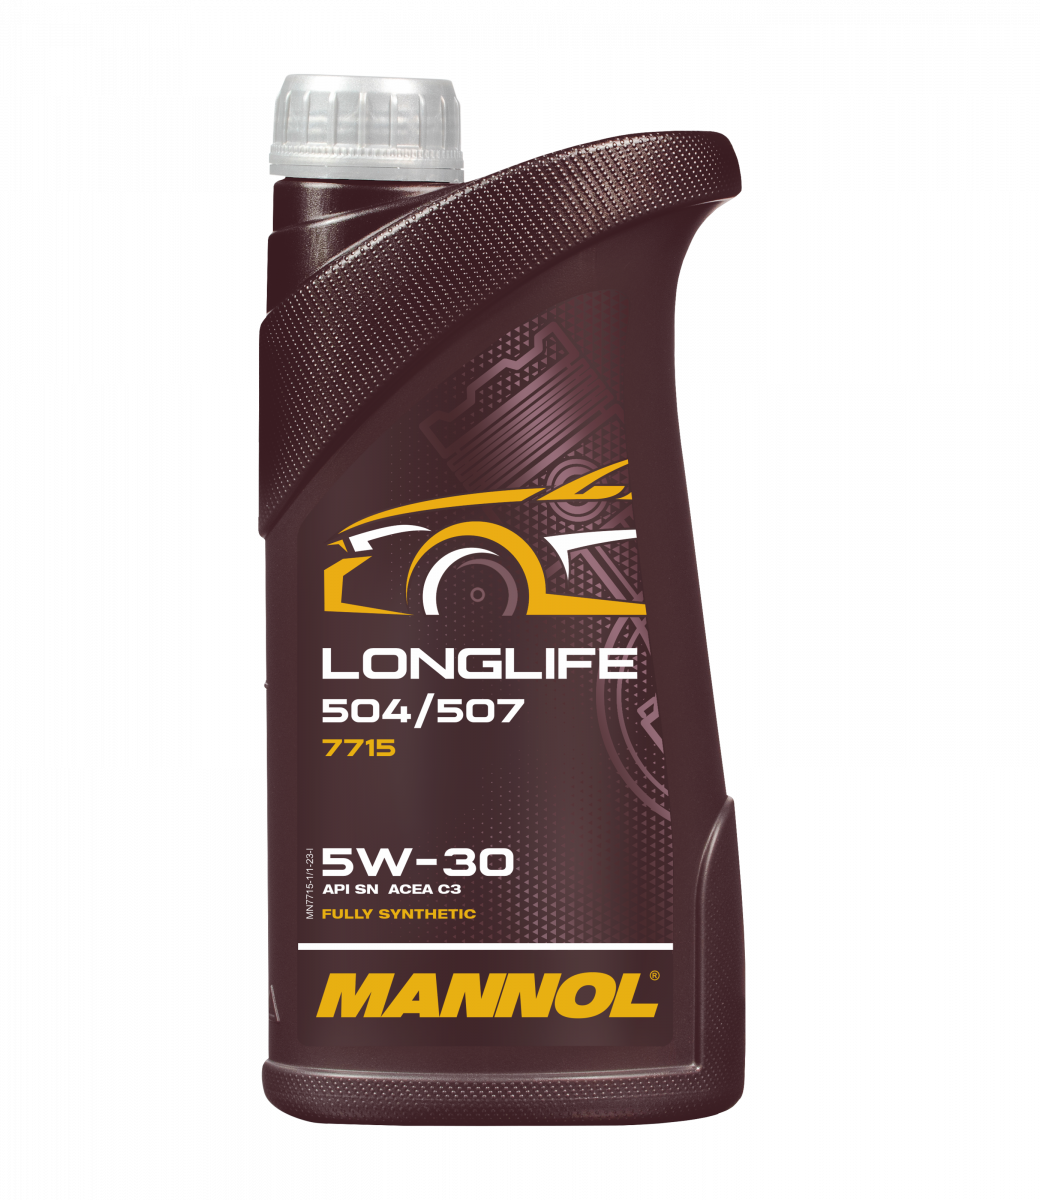 Mannol Oe 7715 5W30 (60 l) ab 192,86 €